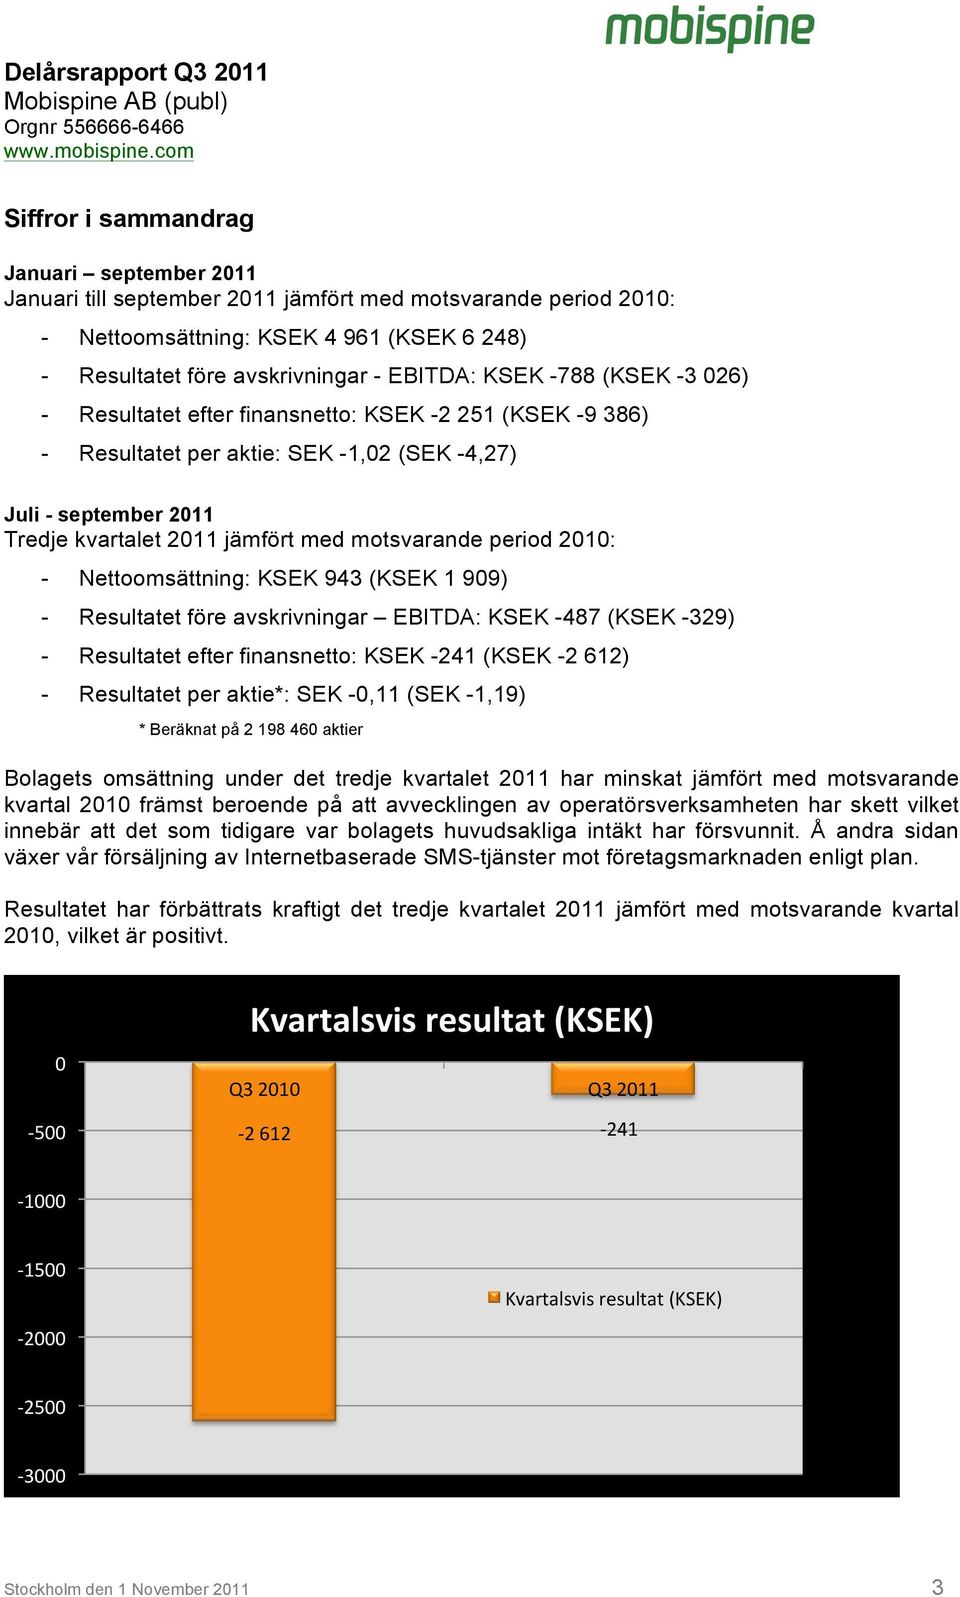 Nettoomsättning: KSEK 943 (KSEK 1 909) - Resultatet före avskrivningar EBITDA: KSEK -487 (KSEK -329) - Resultatet efter finansnetto: KSEK -241 (KSEK -2 612) - Resultatet per aktie*: SEK -0,11 (SEK